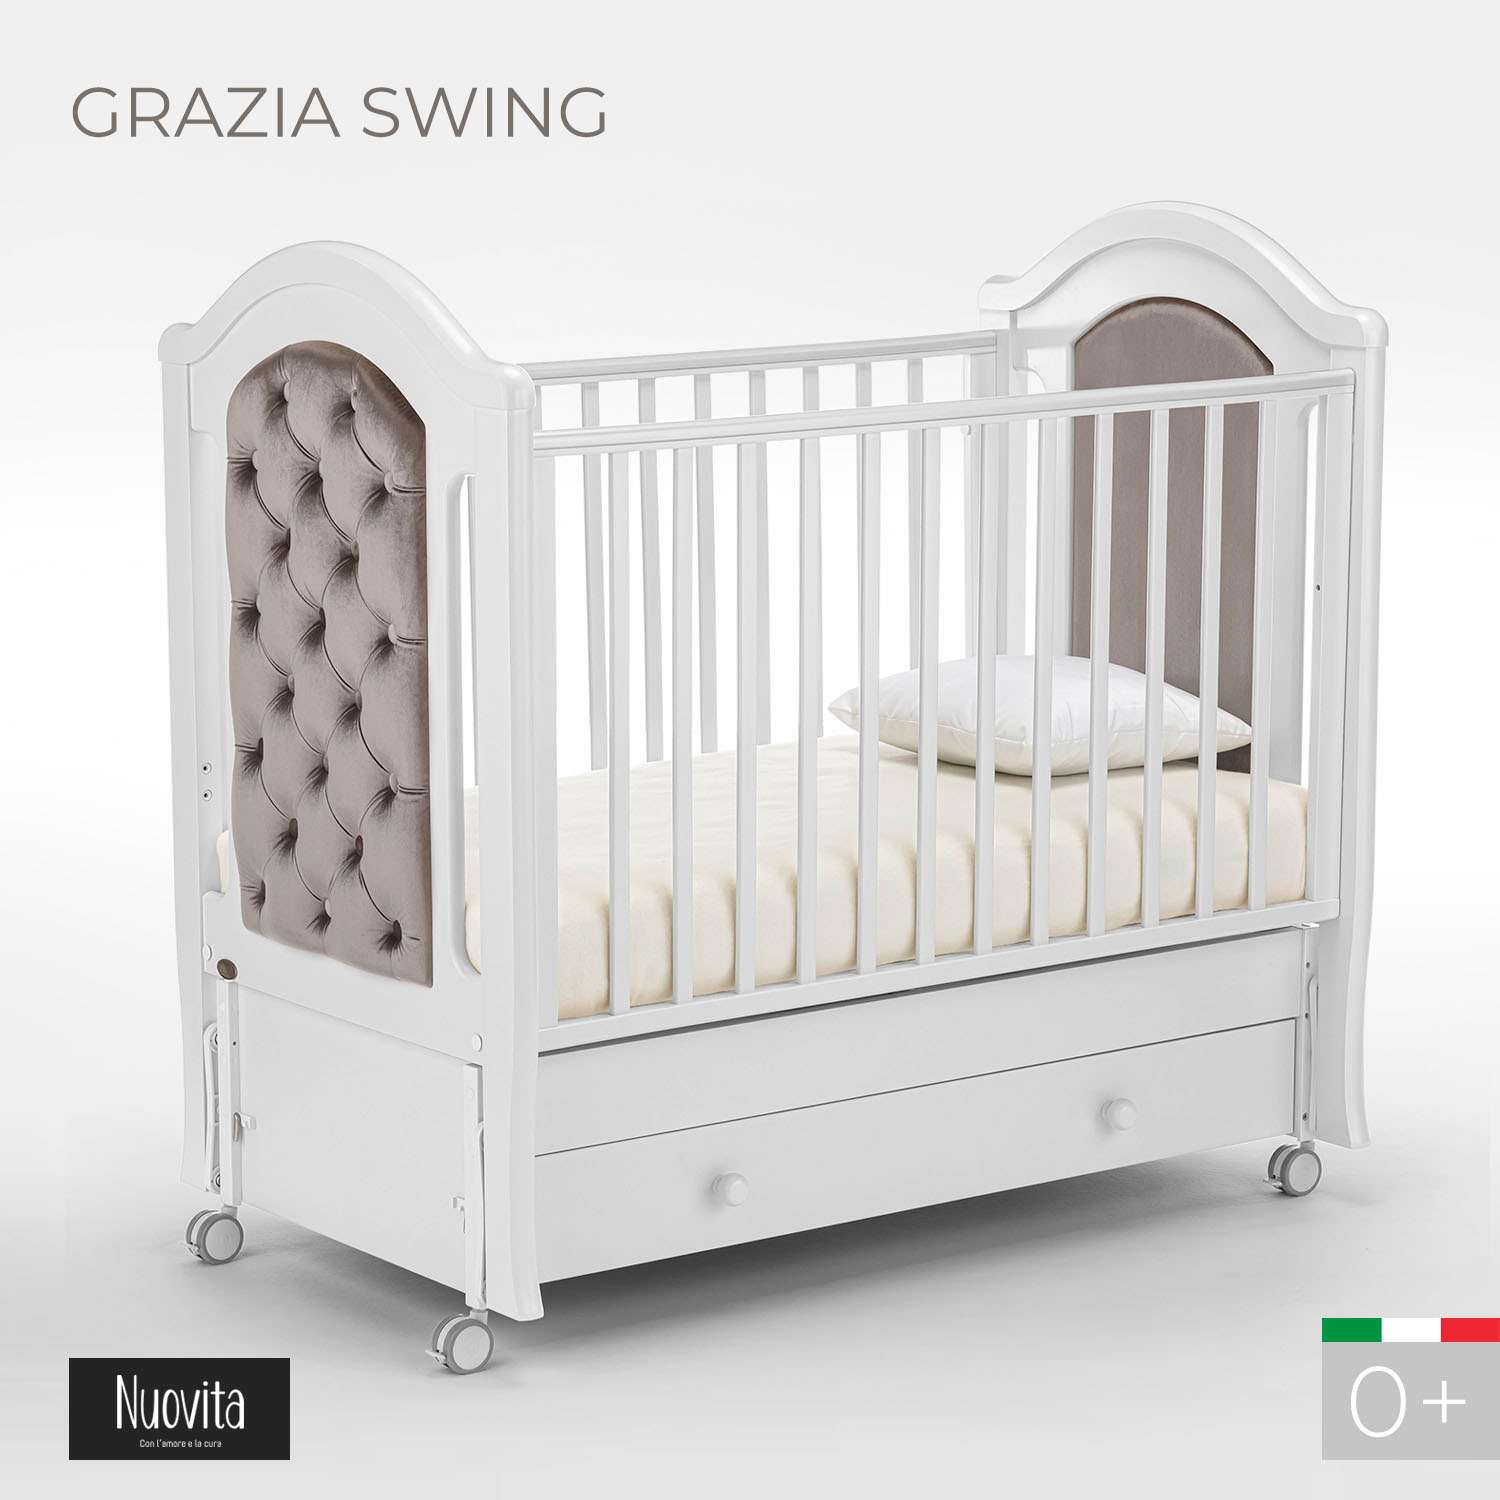 Детская кроватка Nuovita Grazia swing прямоугольная, продольный маятник (белый) - фото 2